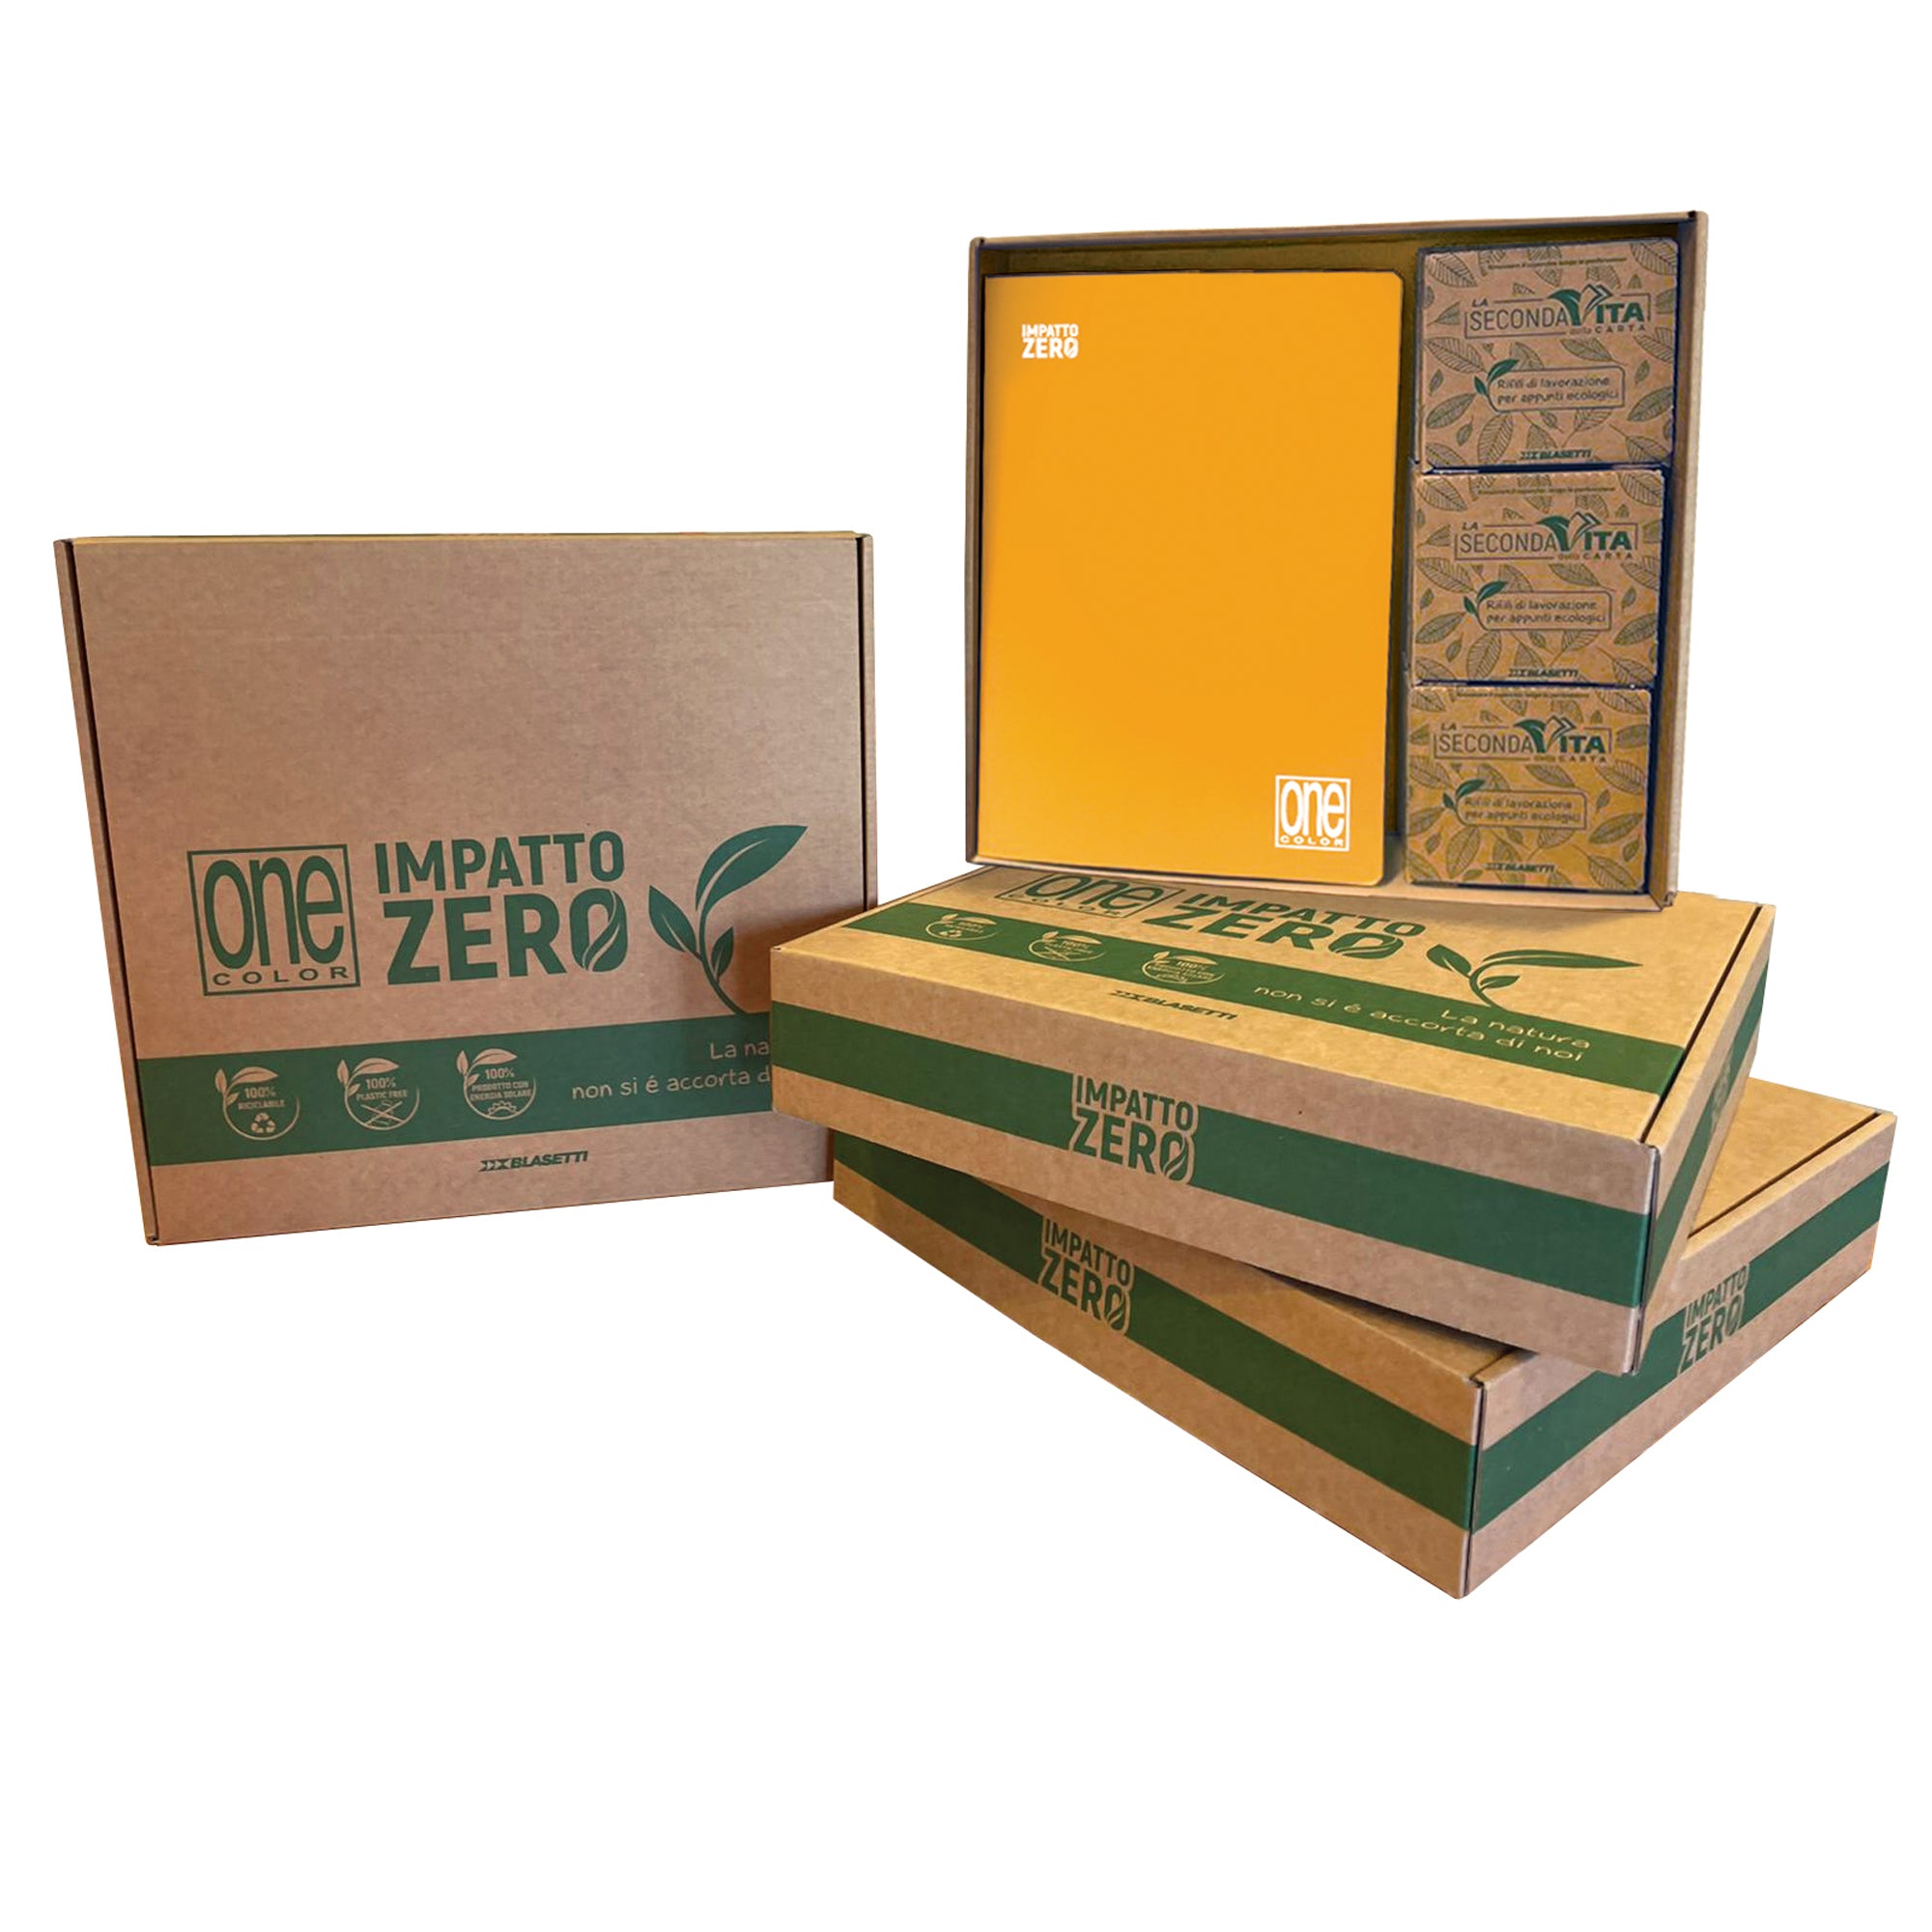 blasetti-box-12-maxiquaderni-onecolor-impatto-zero-201ff-4mm6-scat-foglietti